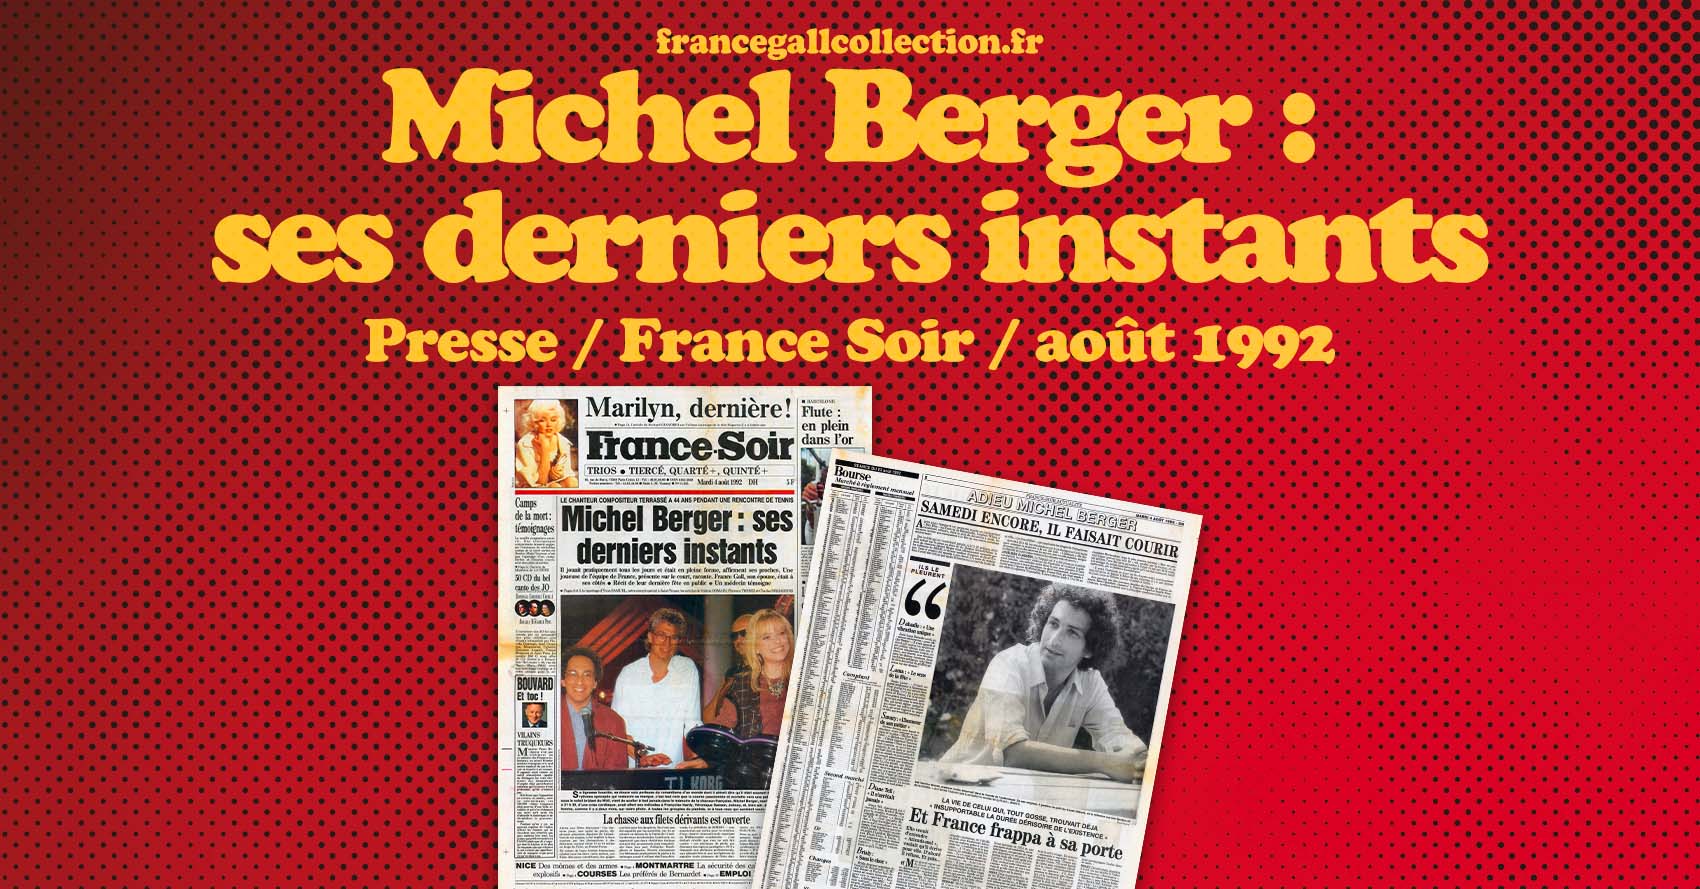 A 21h30 précises, alors qu'il entrait sur la scène en plein air du Théâtre Gérard-Philipe, la mort du chanteur Michel Berger était officiellement constaté par les médecins du SMUR, le Service médical d'urgence de Saint-Tropez.